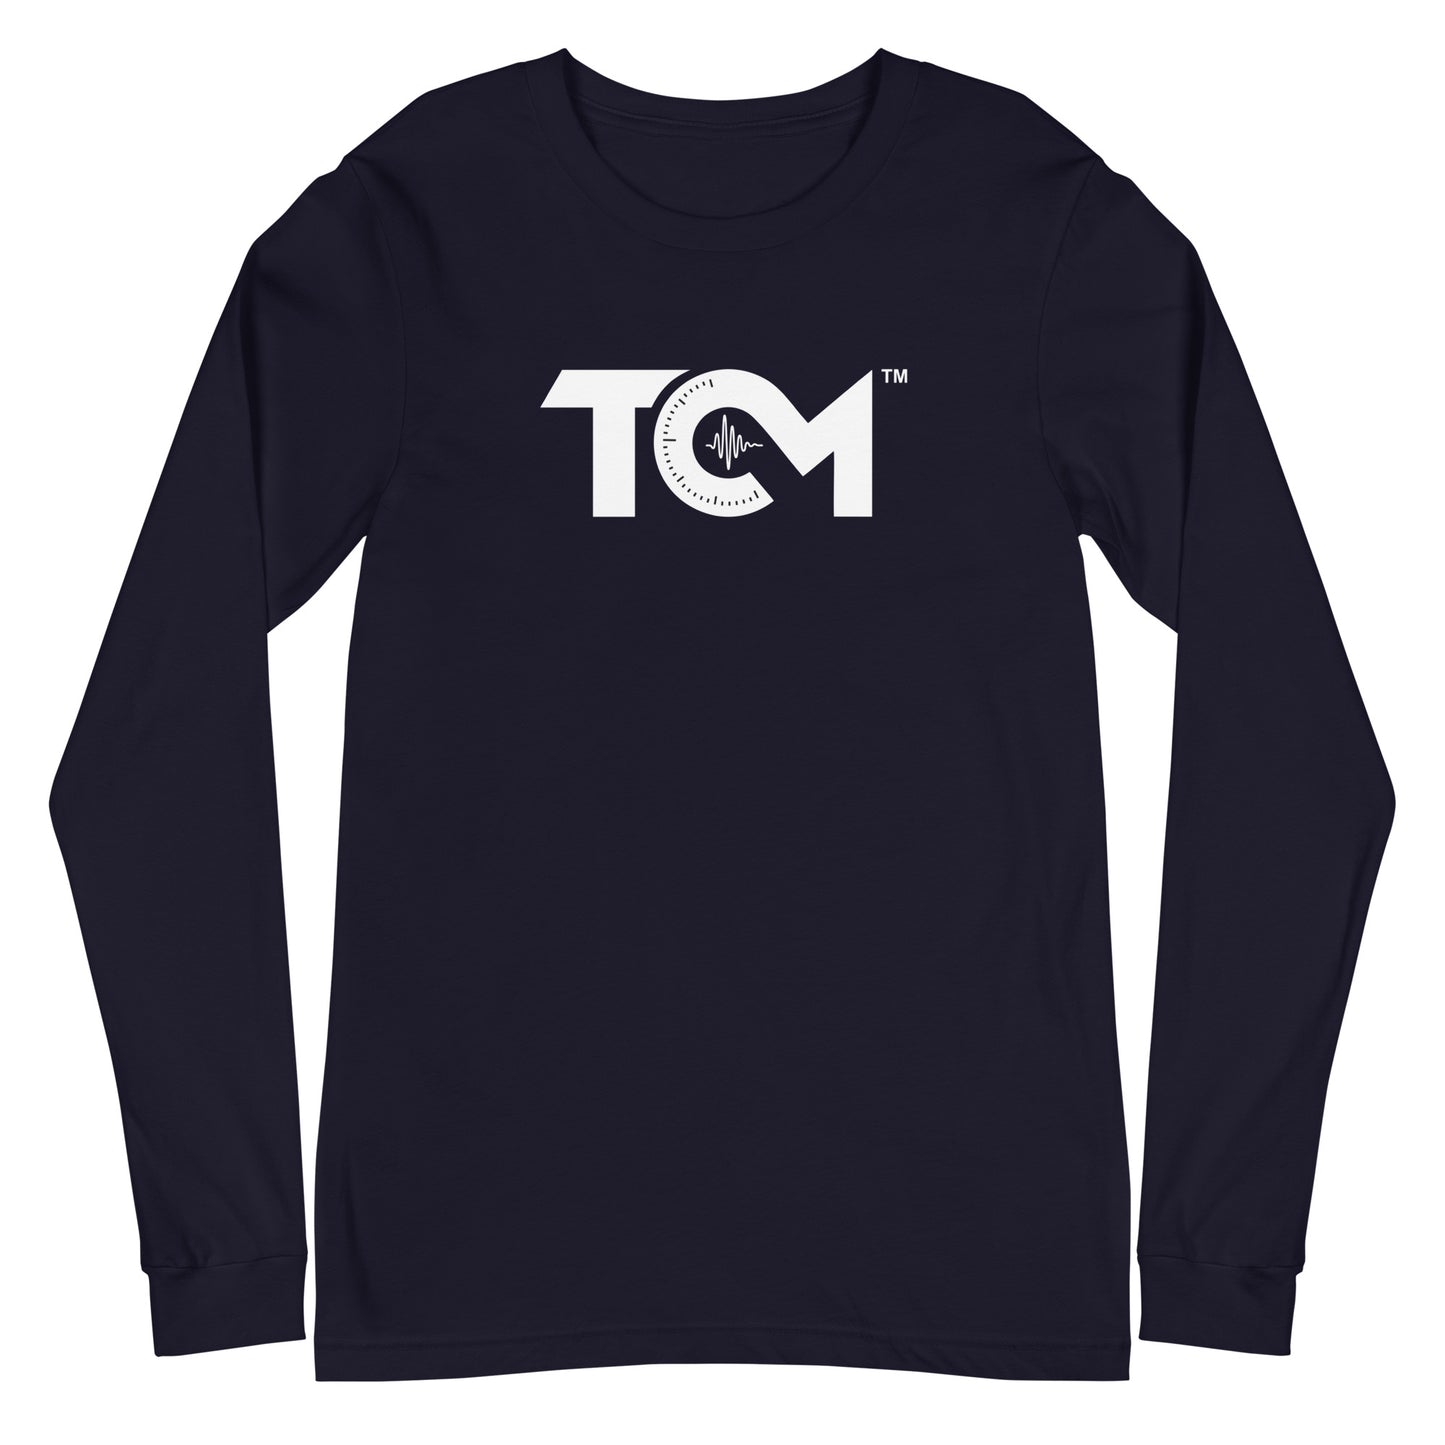 TCM unisex long sleeve shirt